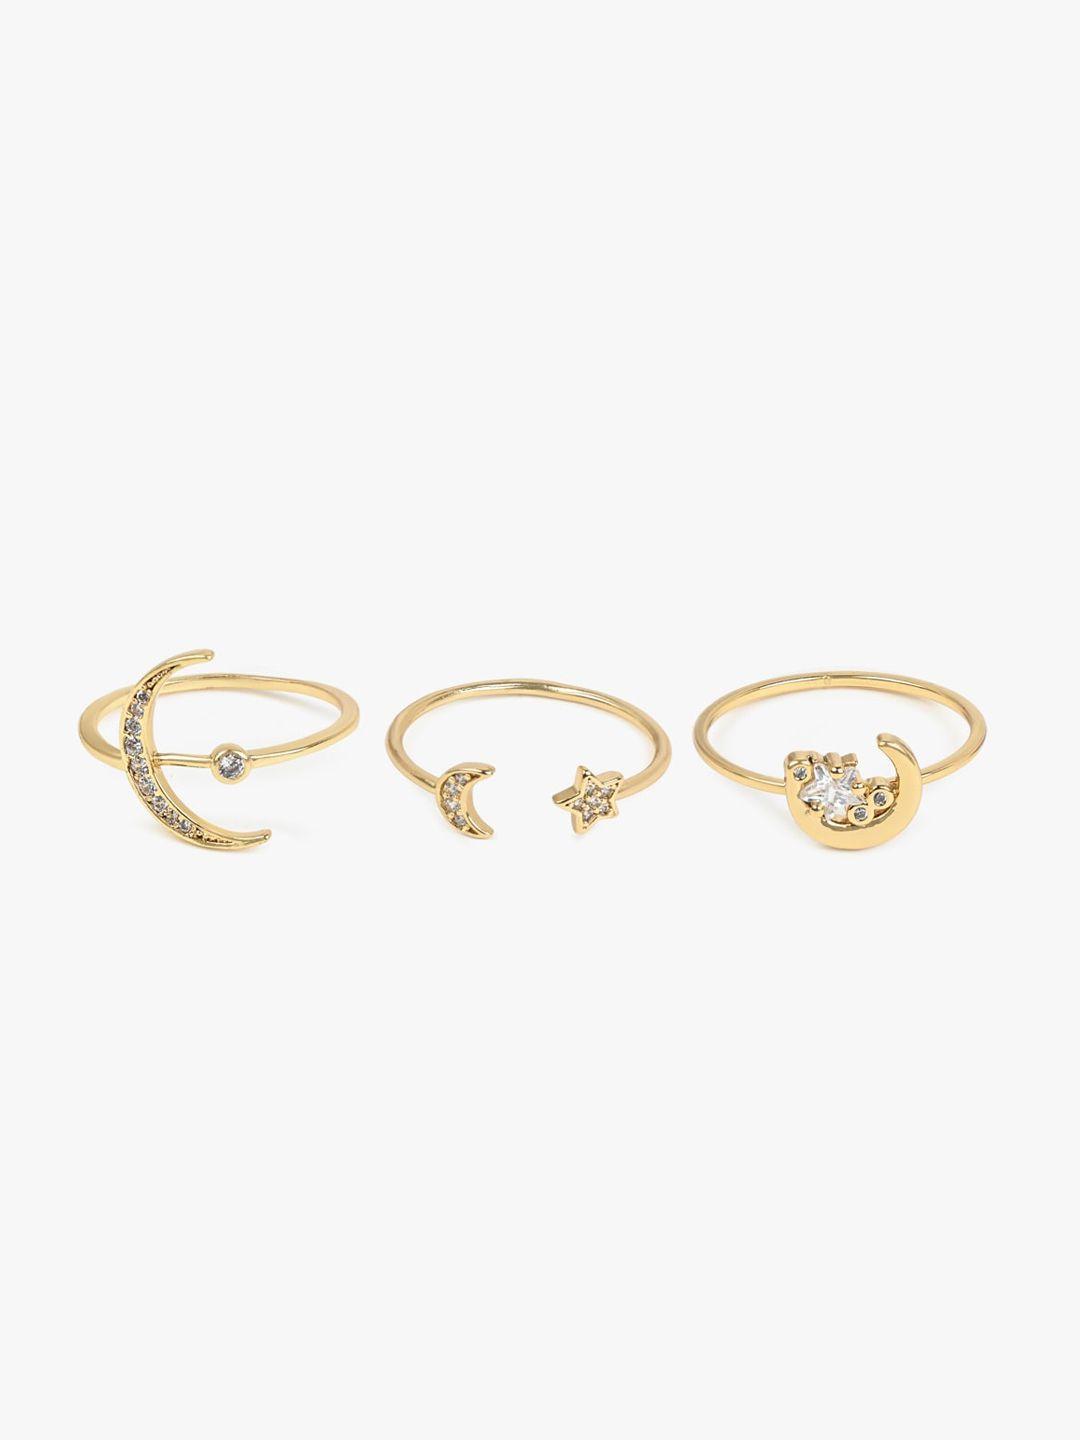 aldo-set-of-3-gold-plated-star-&-moon-designed-stone-studded-finger-rings